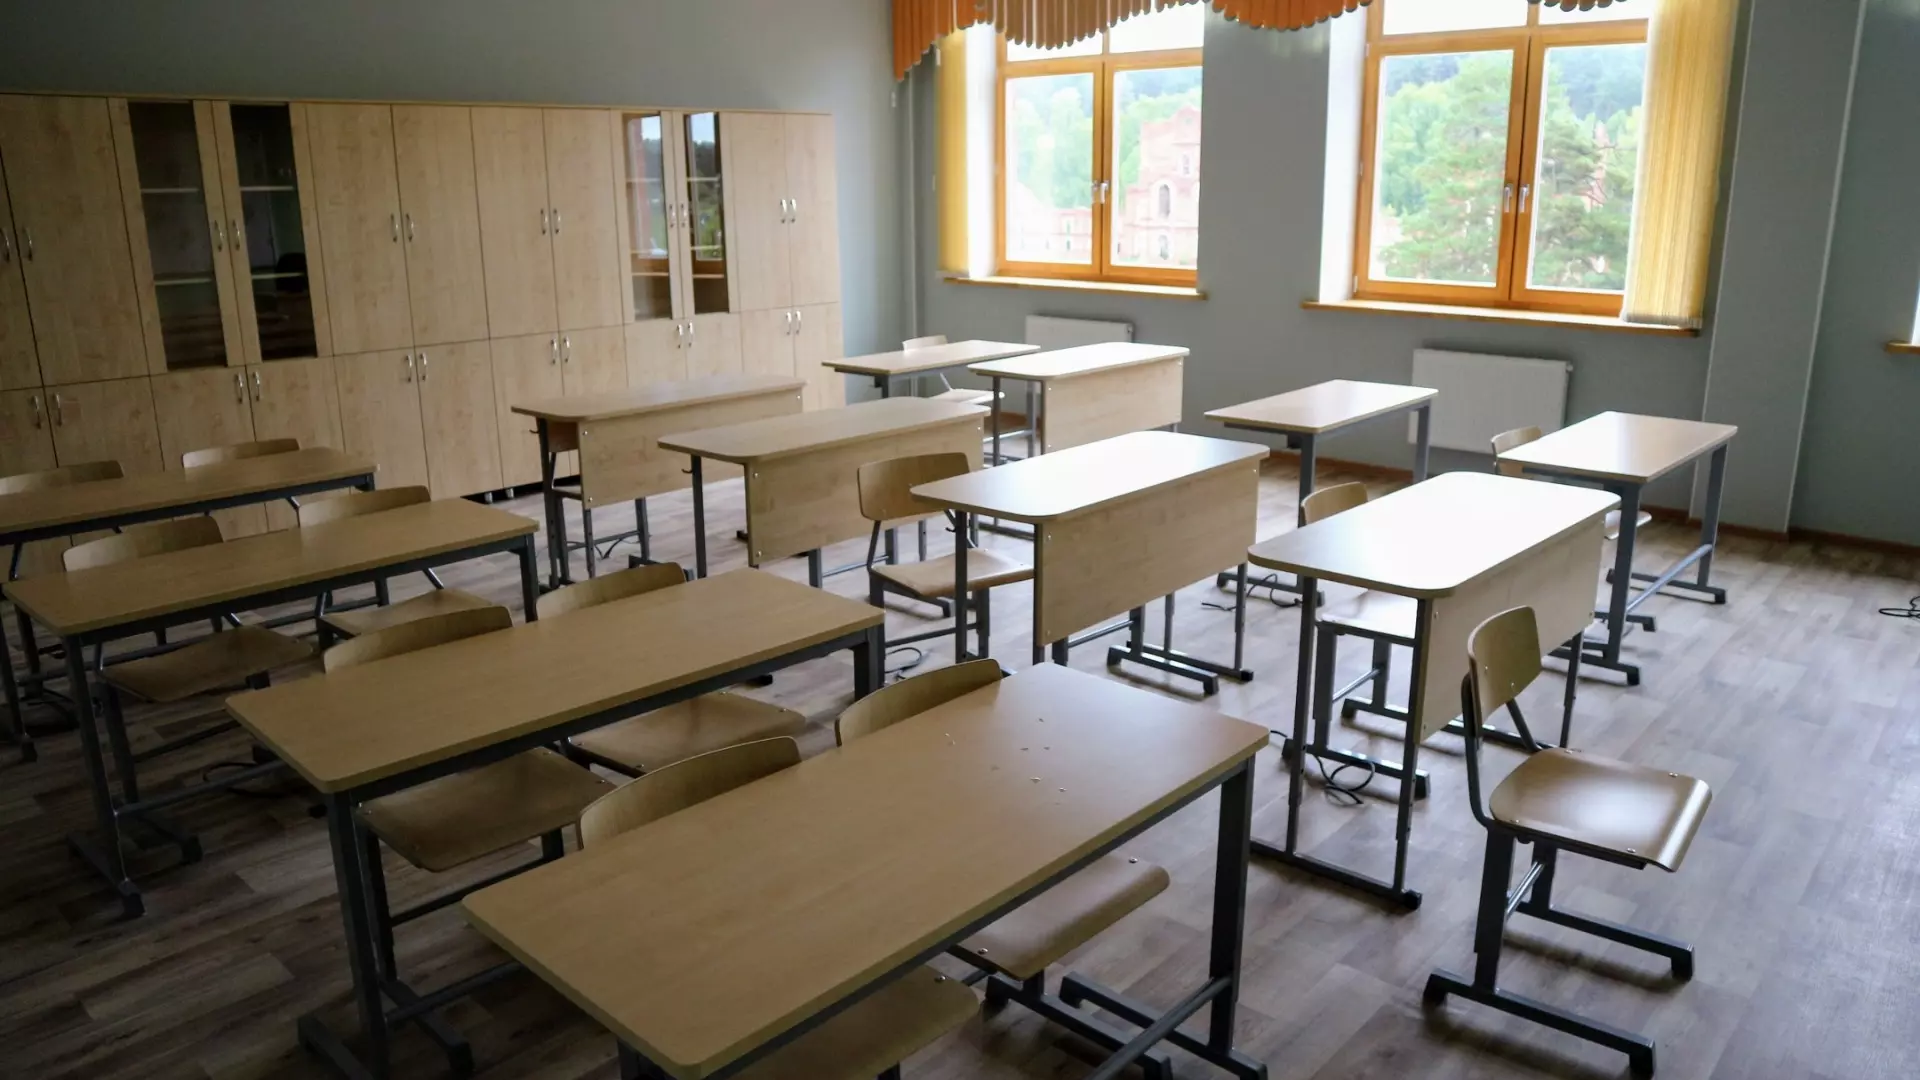 «Необходима вовлеченность»: глава Удмуртии о контроле за капремонтом школ